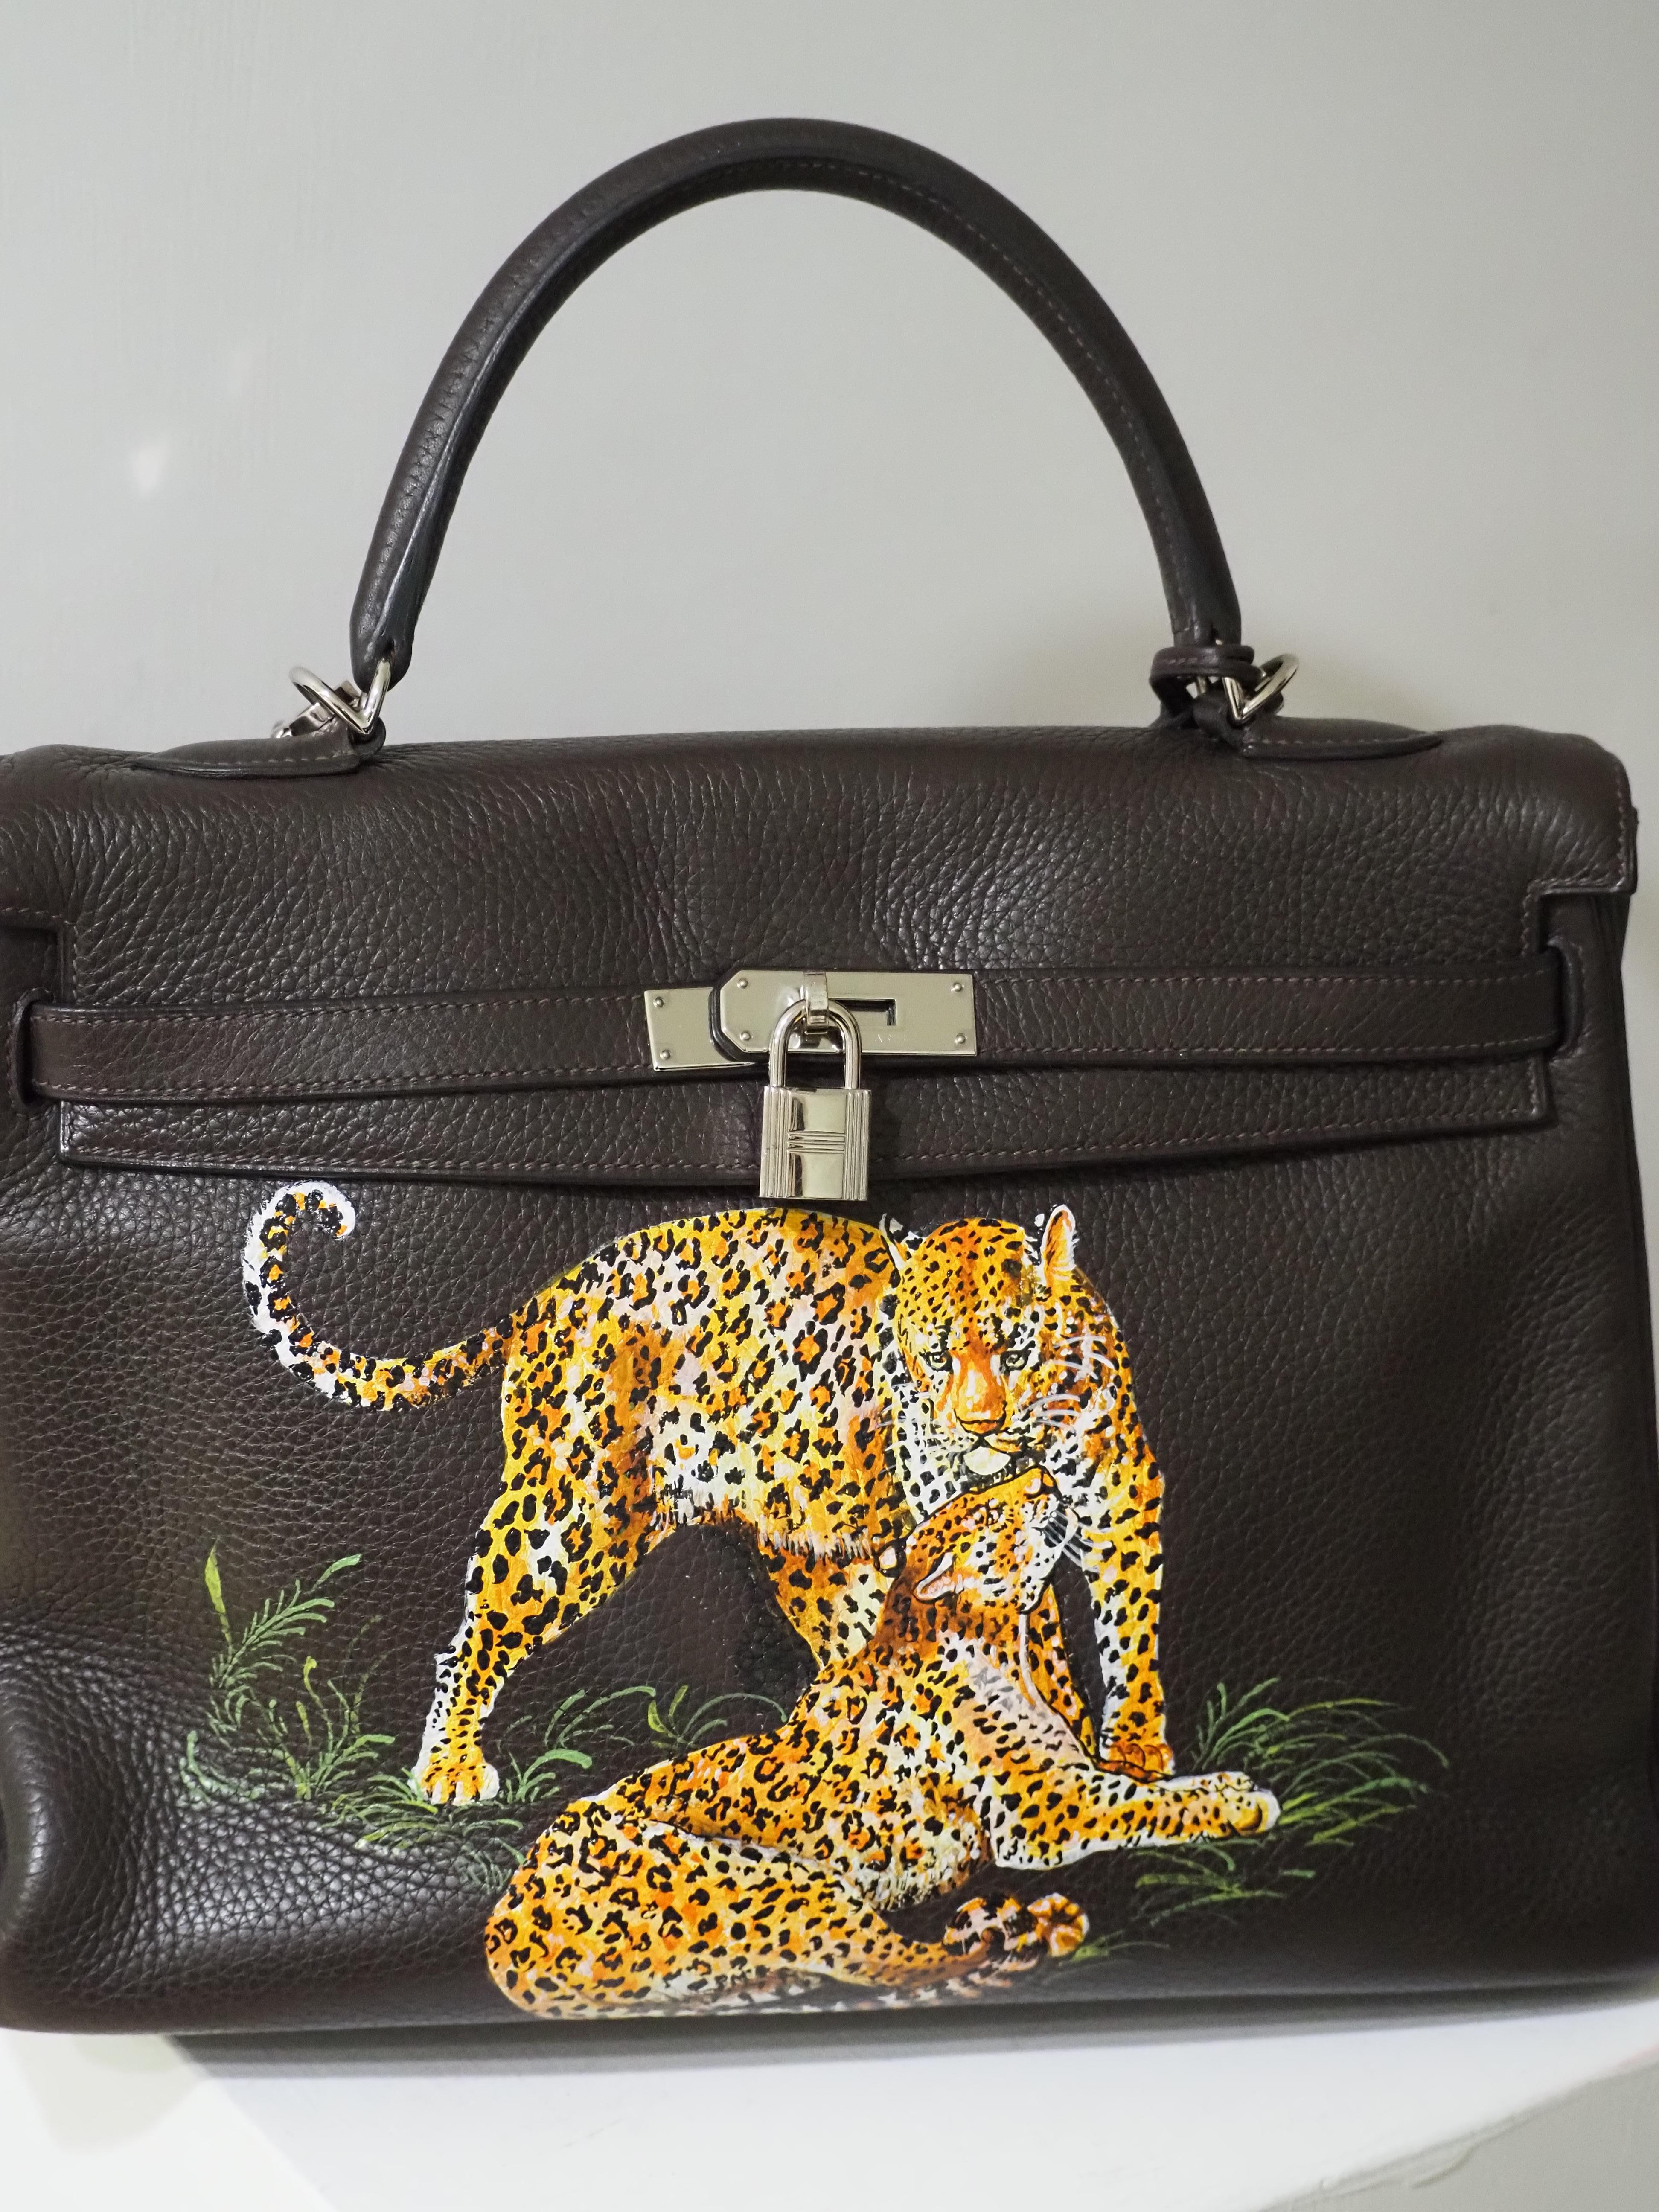 Hermés 35 Brown leather handpainted handbag shoulder bag
35 * 21 cm, 16 cm depth